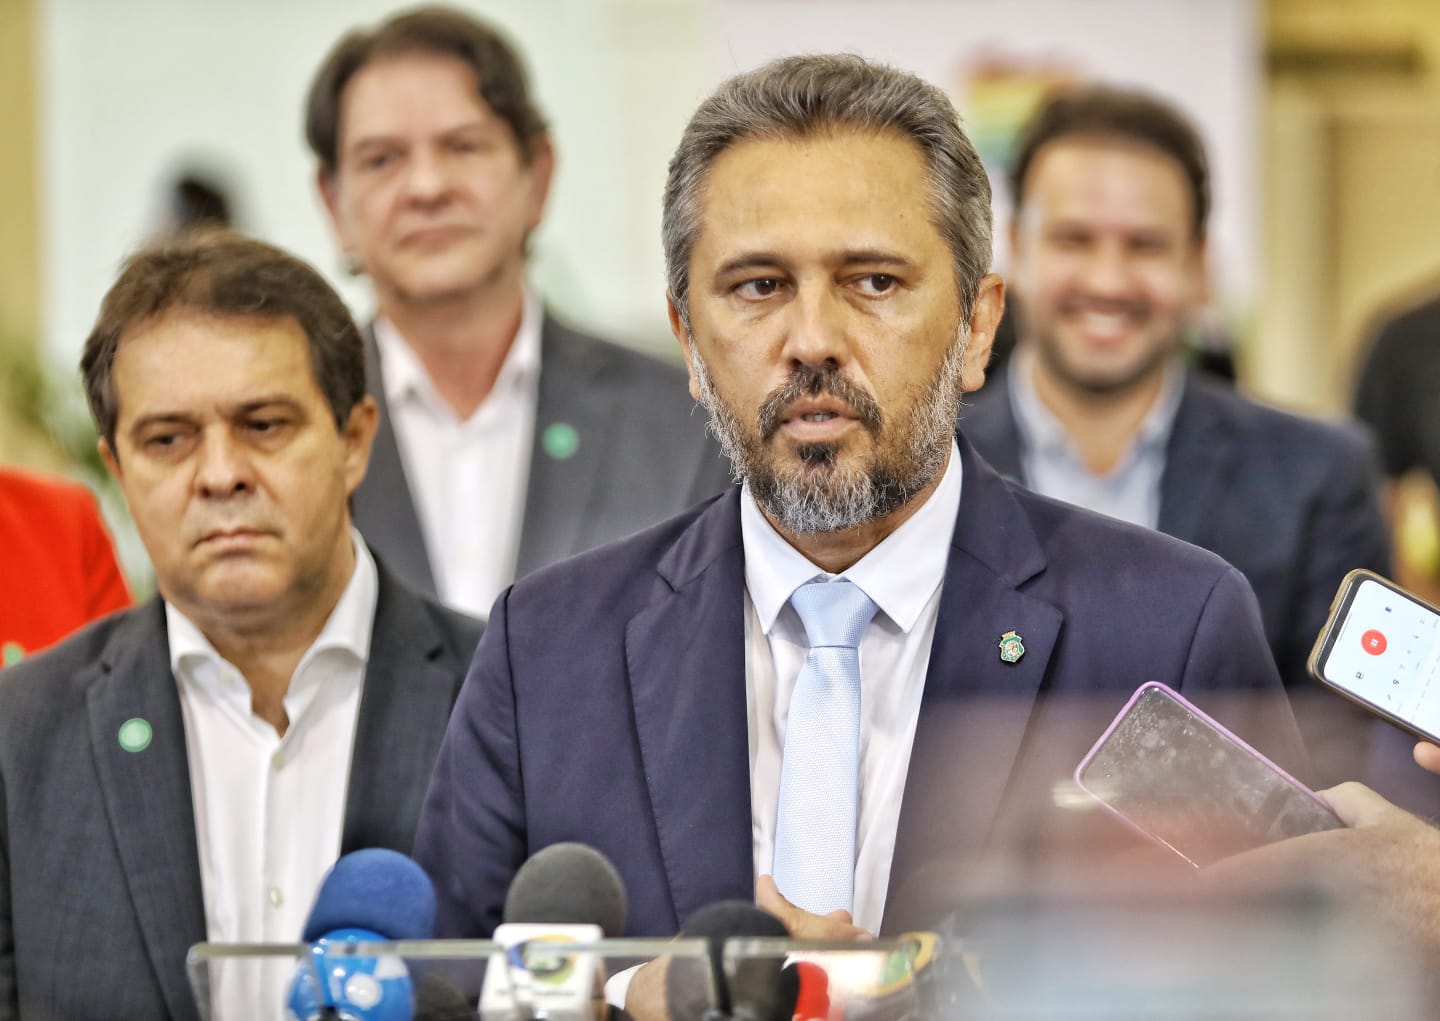 Elmano lista Evandro Leitão entre os nomes que podem concorrer à Prefeitura de Fortaleza pelo PT